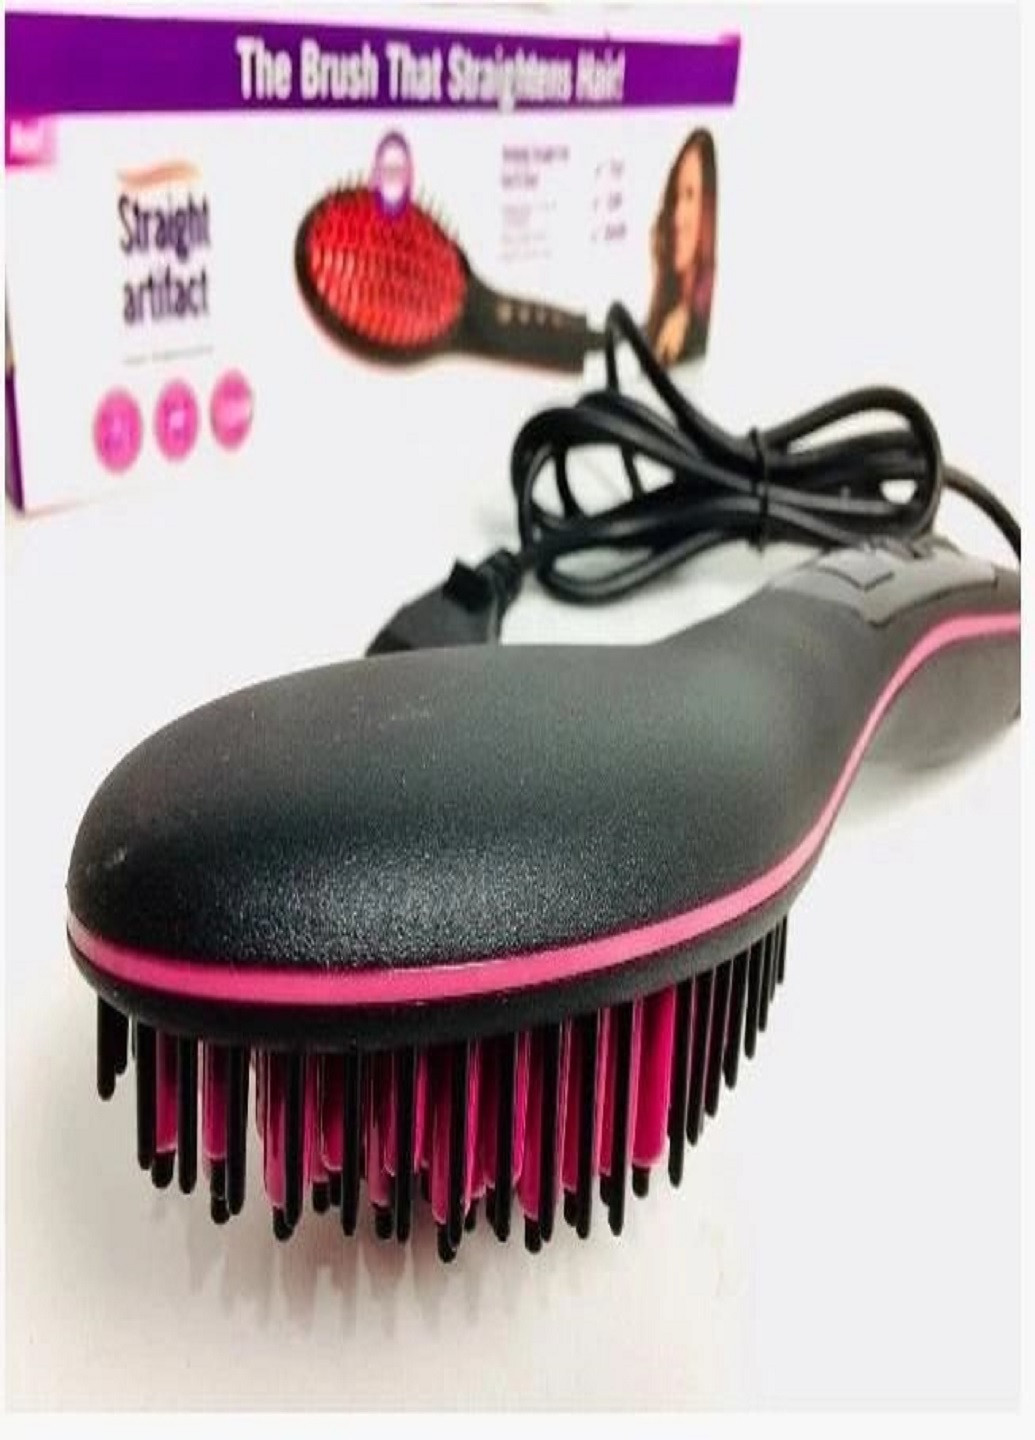 Расческа-выпрямитель для волос Straight artifact HQT-906B электрическая с LED дисплеем VTech (259575334)